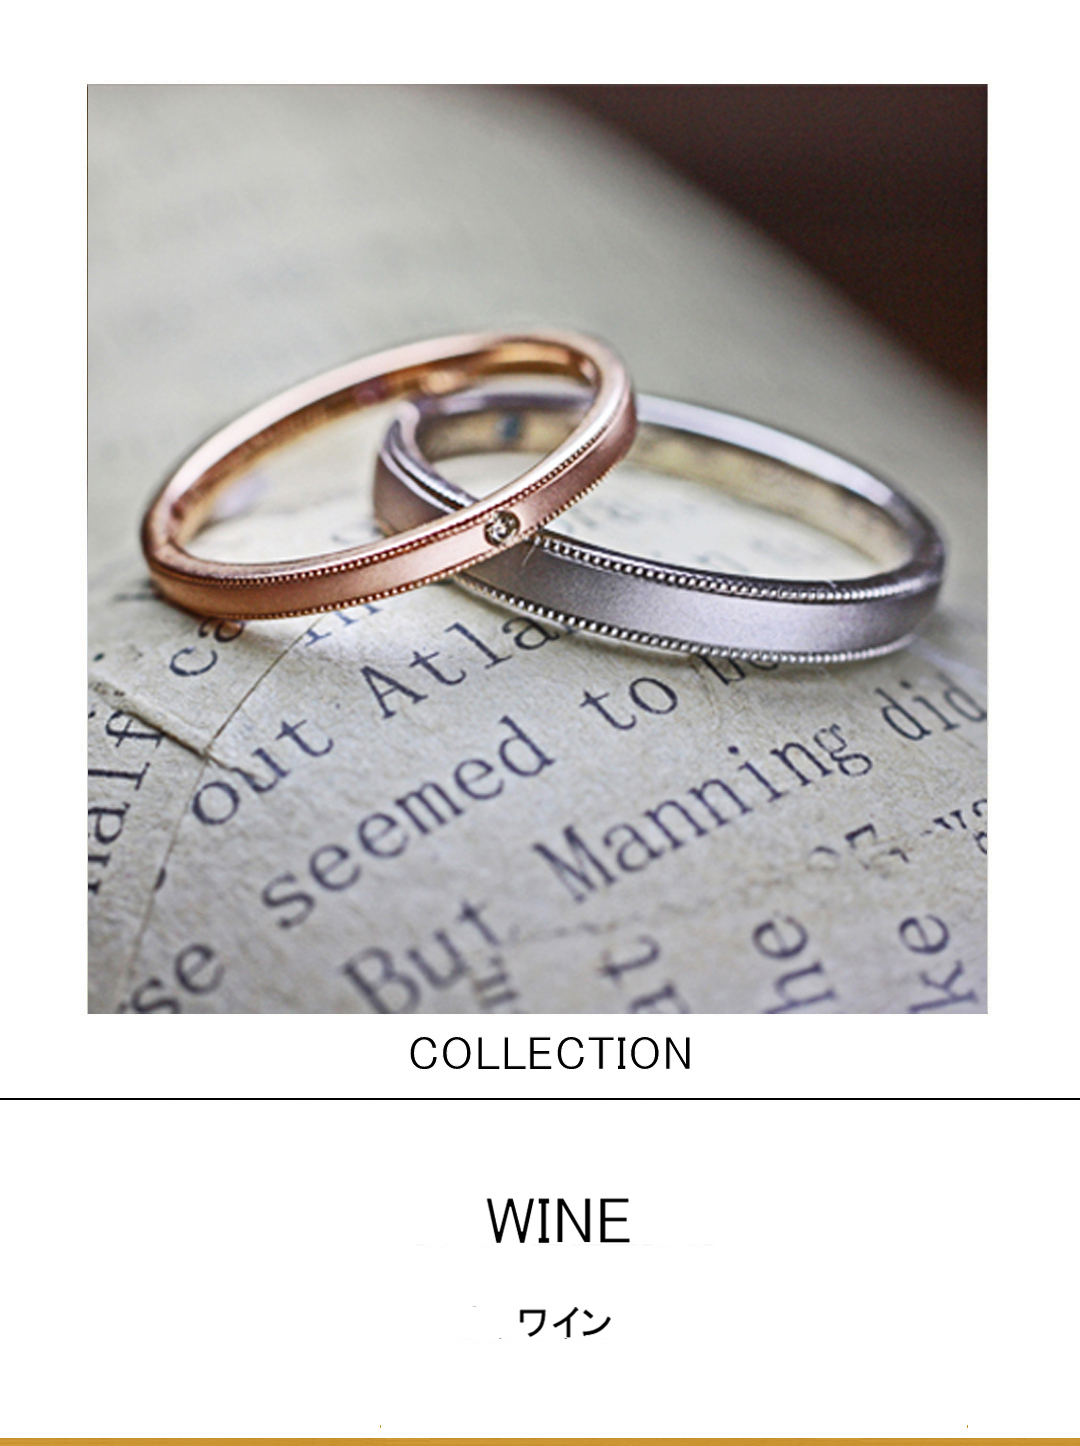 ワイン色のピンクゴールドとグレーゴールドの結婚指輪コレクションのサムネイル